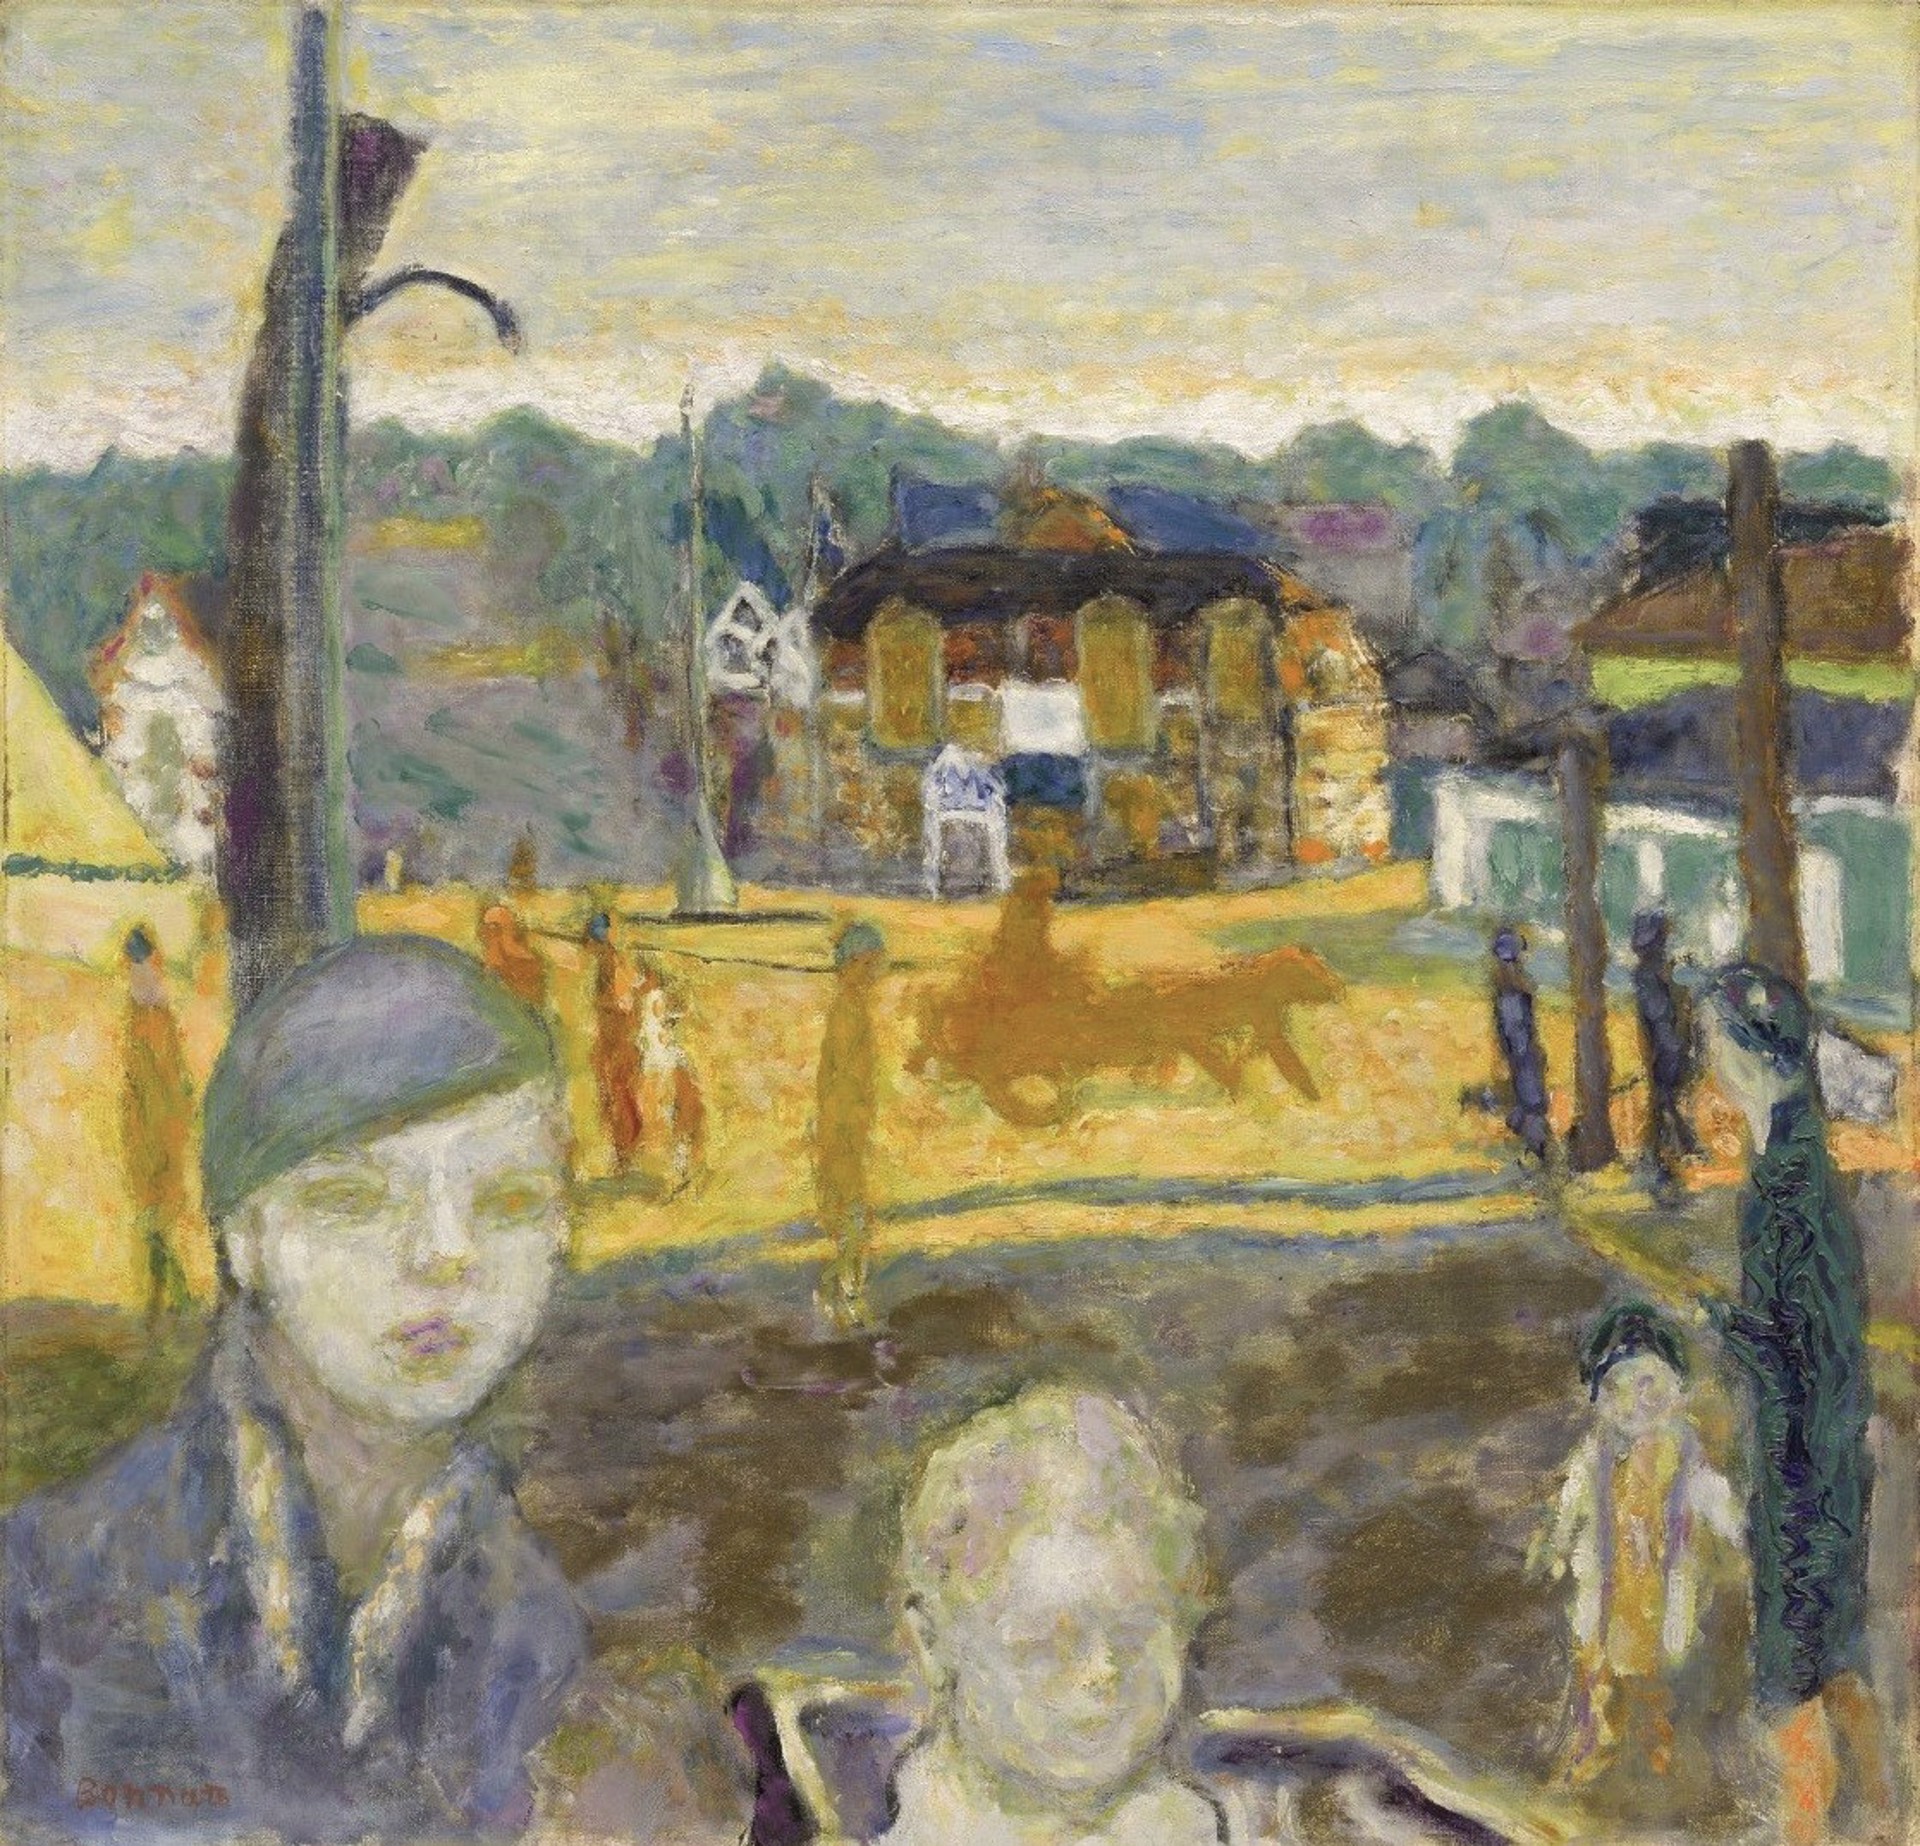 Street Scene (Arcachon) by Pierre Bonnard